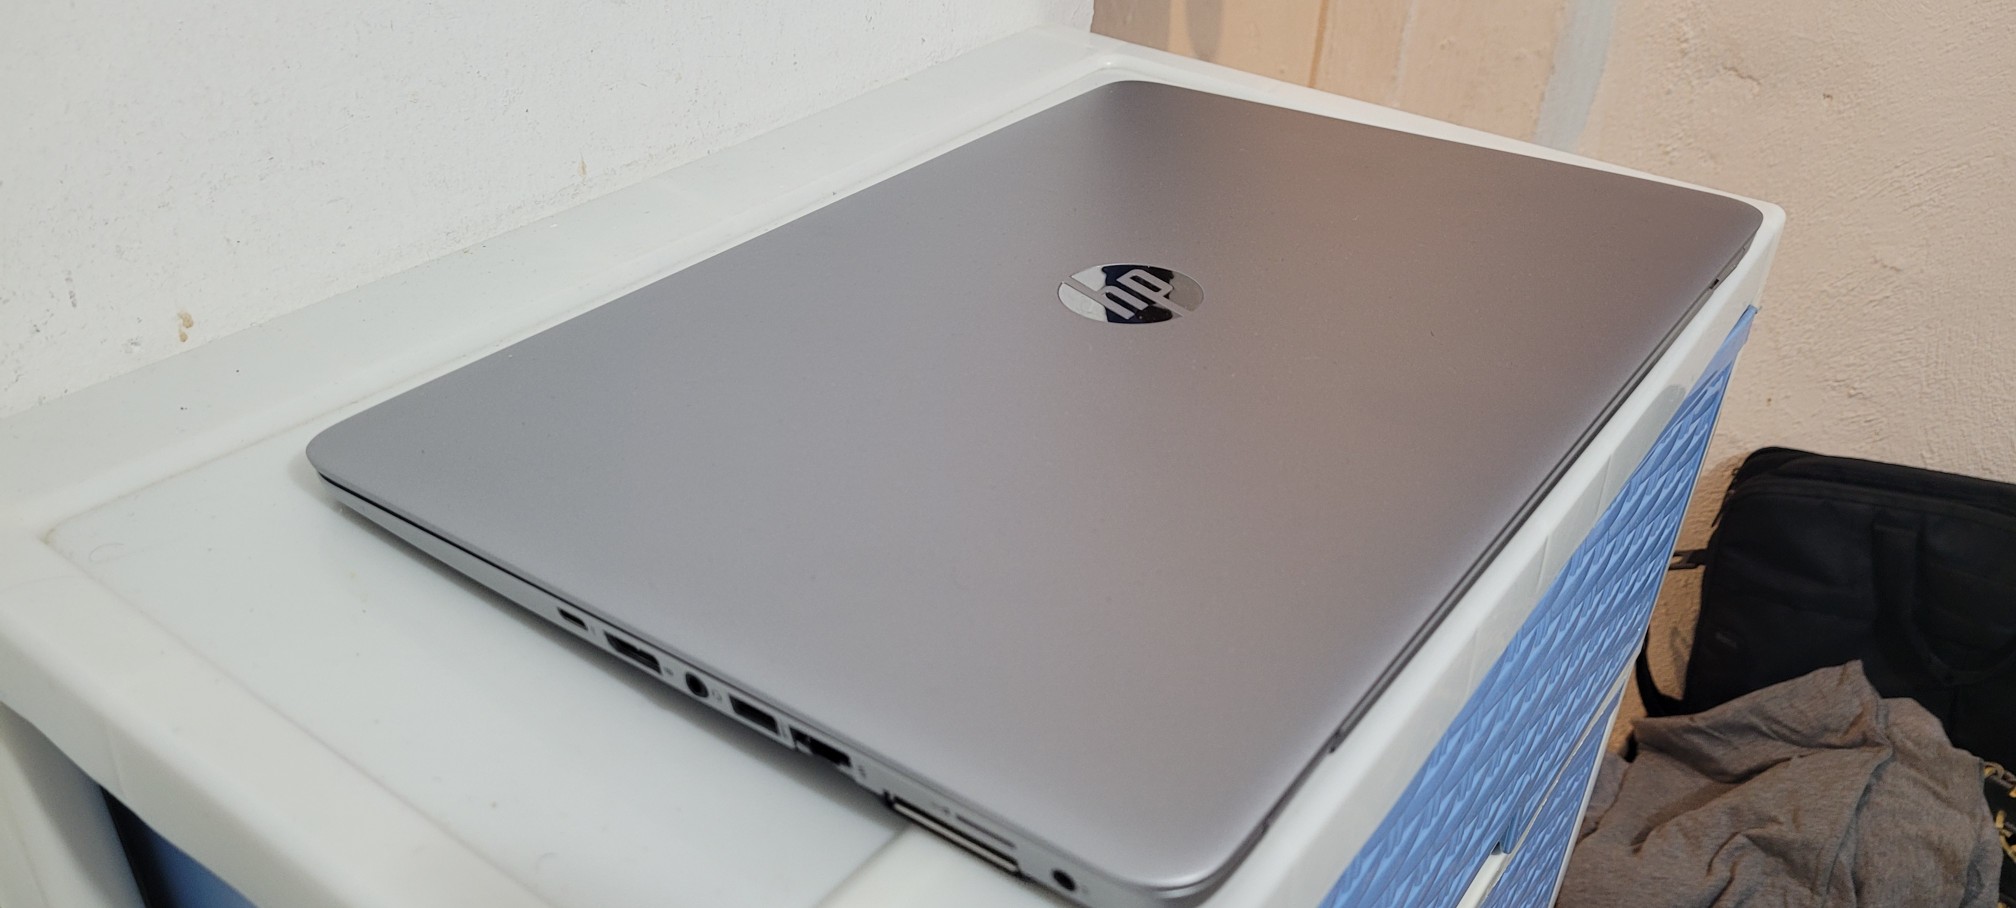 computadoras y laptops - New hp G3 14 Pulg Core i5 6ta Gen Ram 8gb ddr4 Disco 500gb Full 2